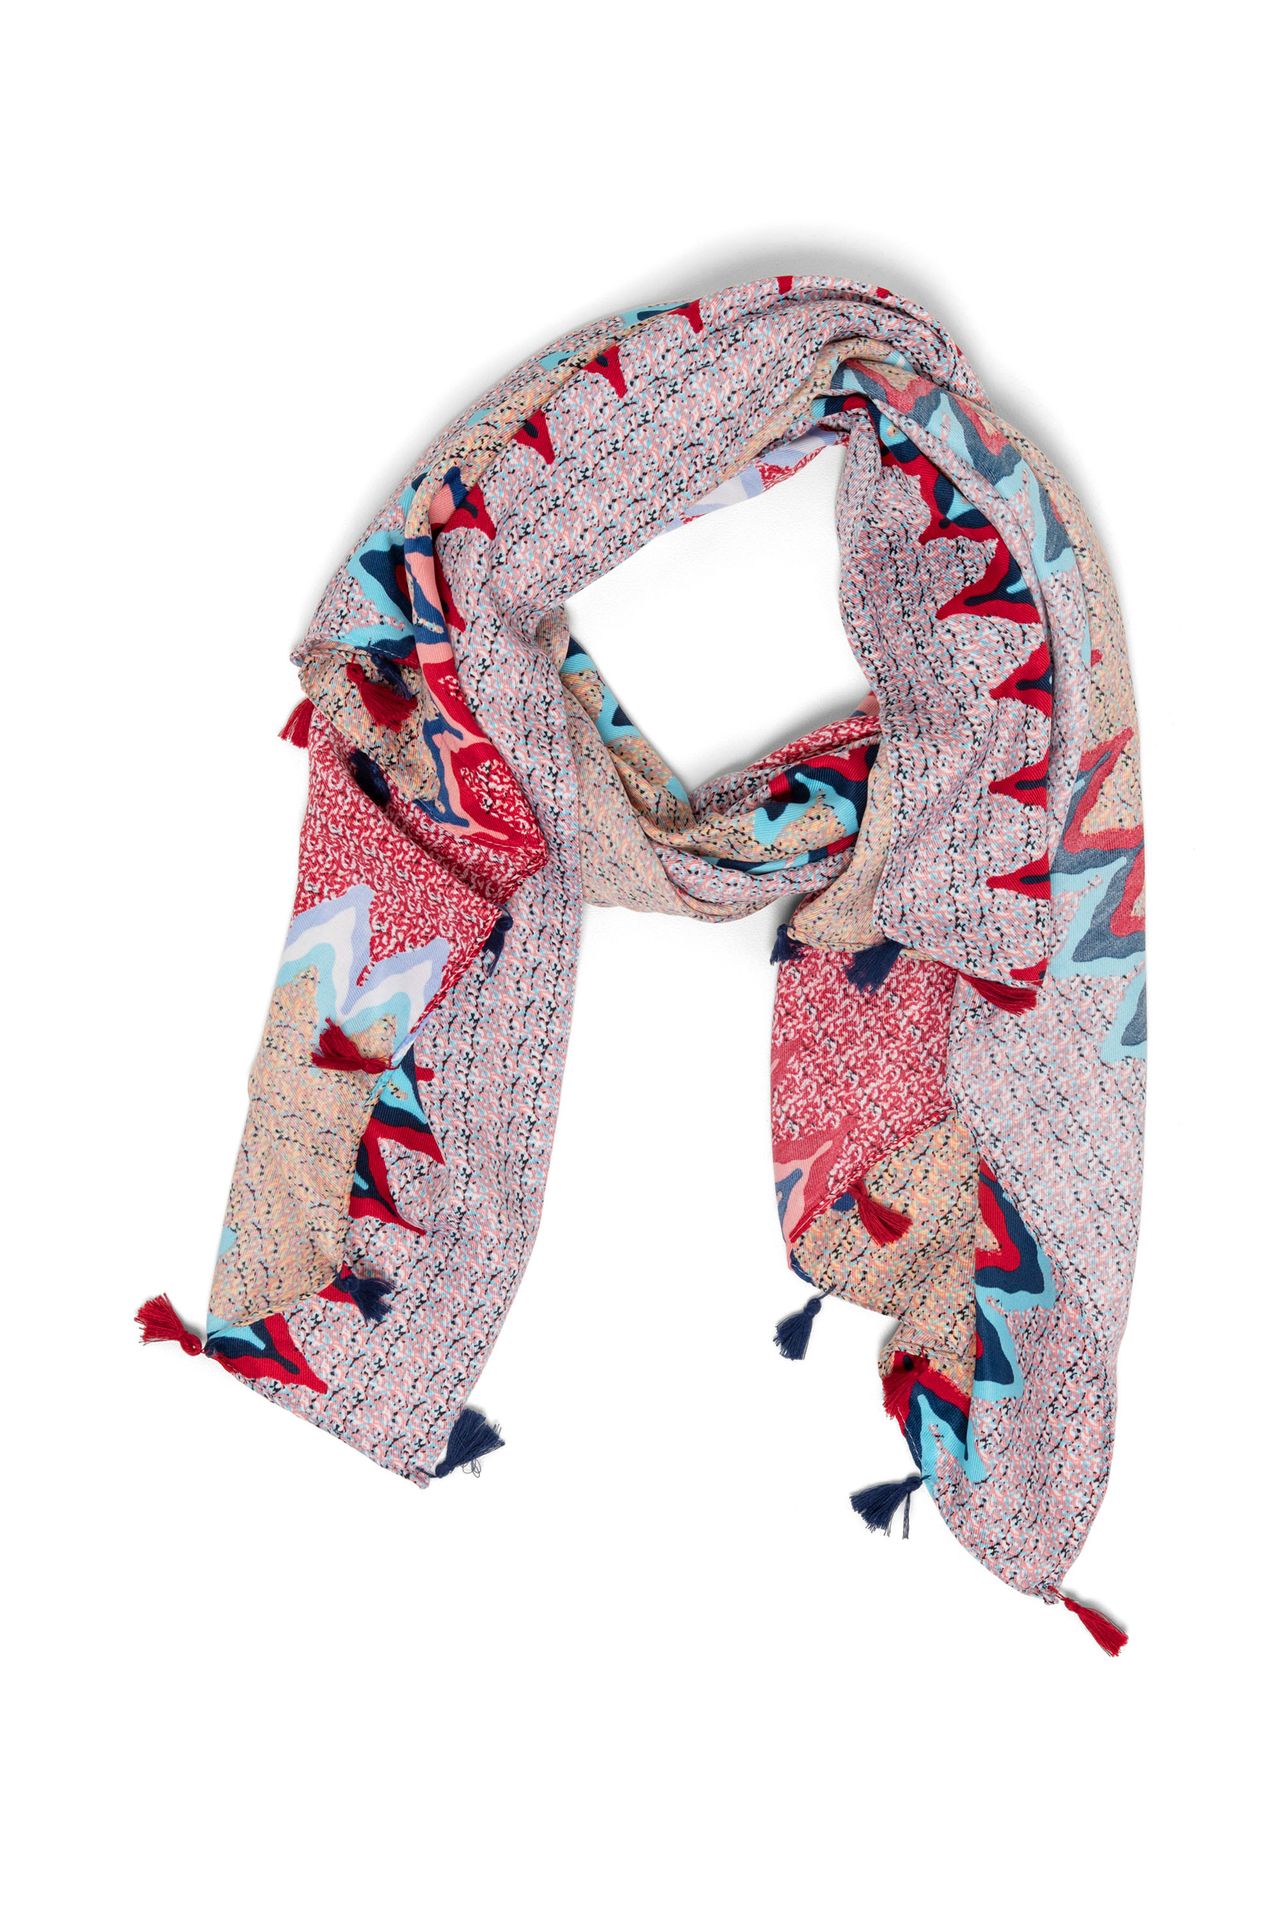 Norah Dun geweven sjaal meerkleurig multicolor 213720-002